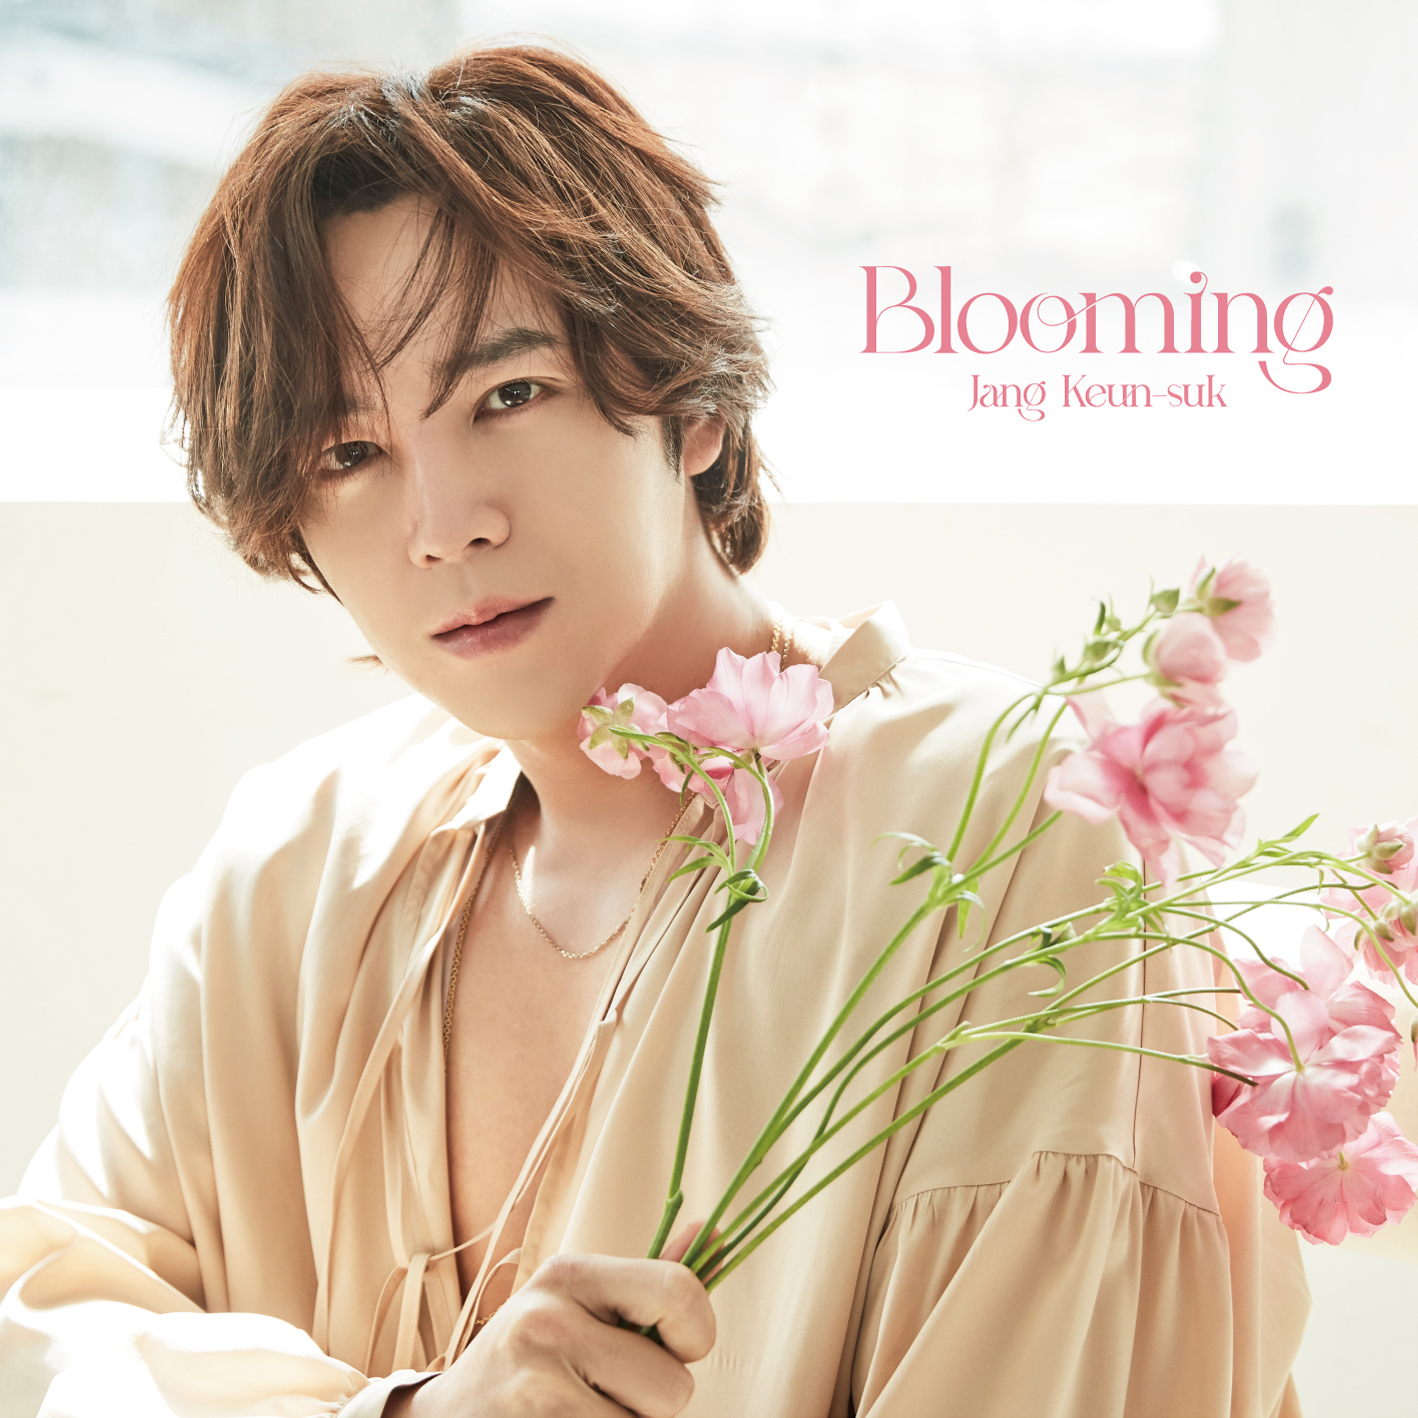 チャン・グンソク - Blooming [初回限定盤A]（CD＋DVD+52Ｐフォトブック）